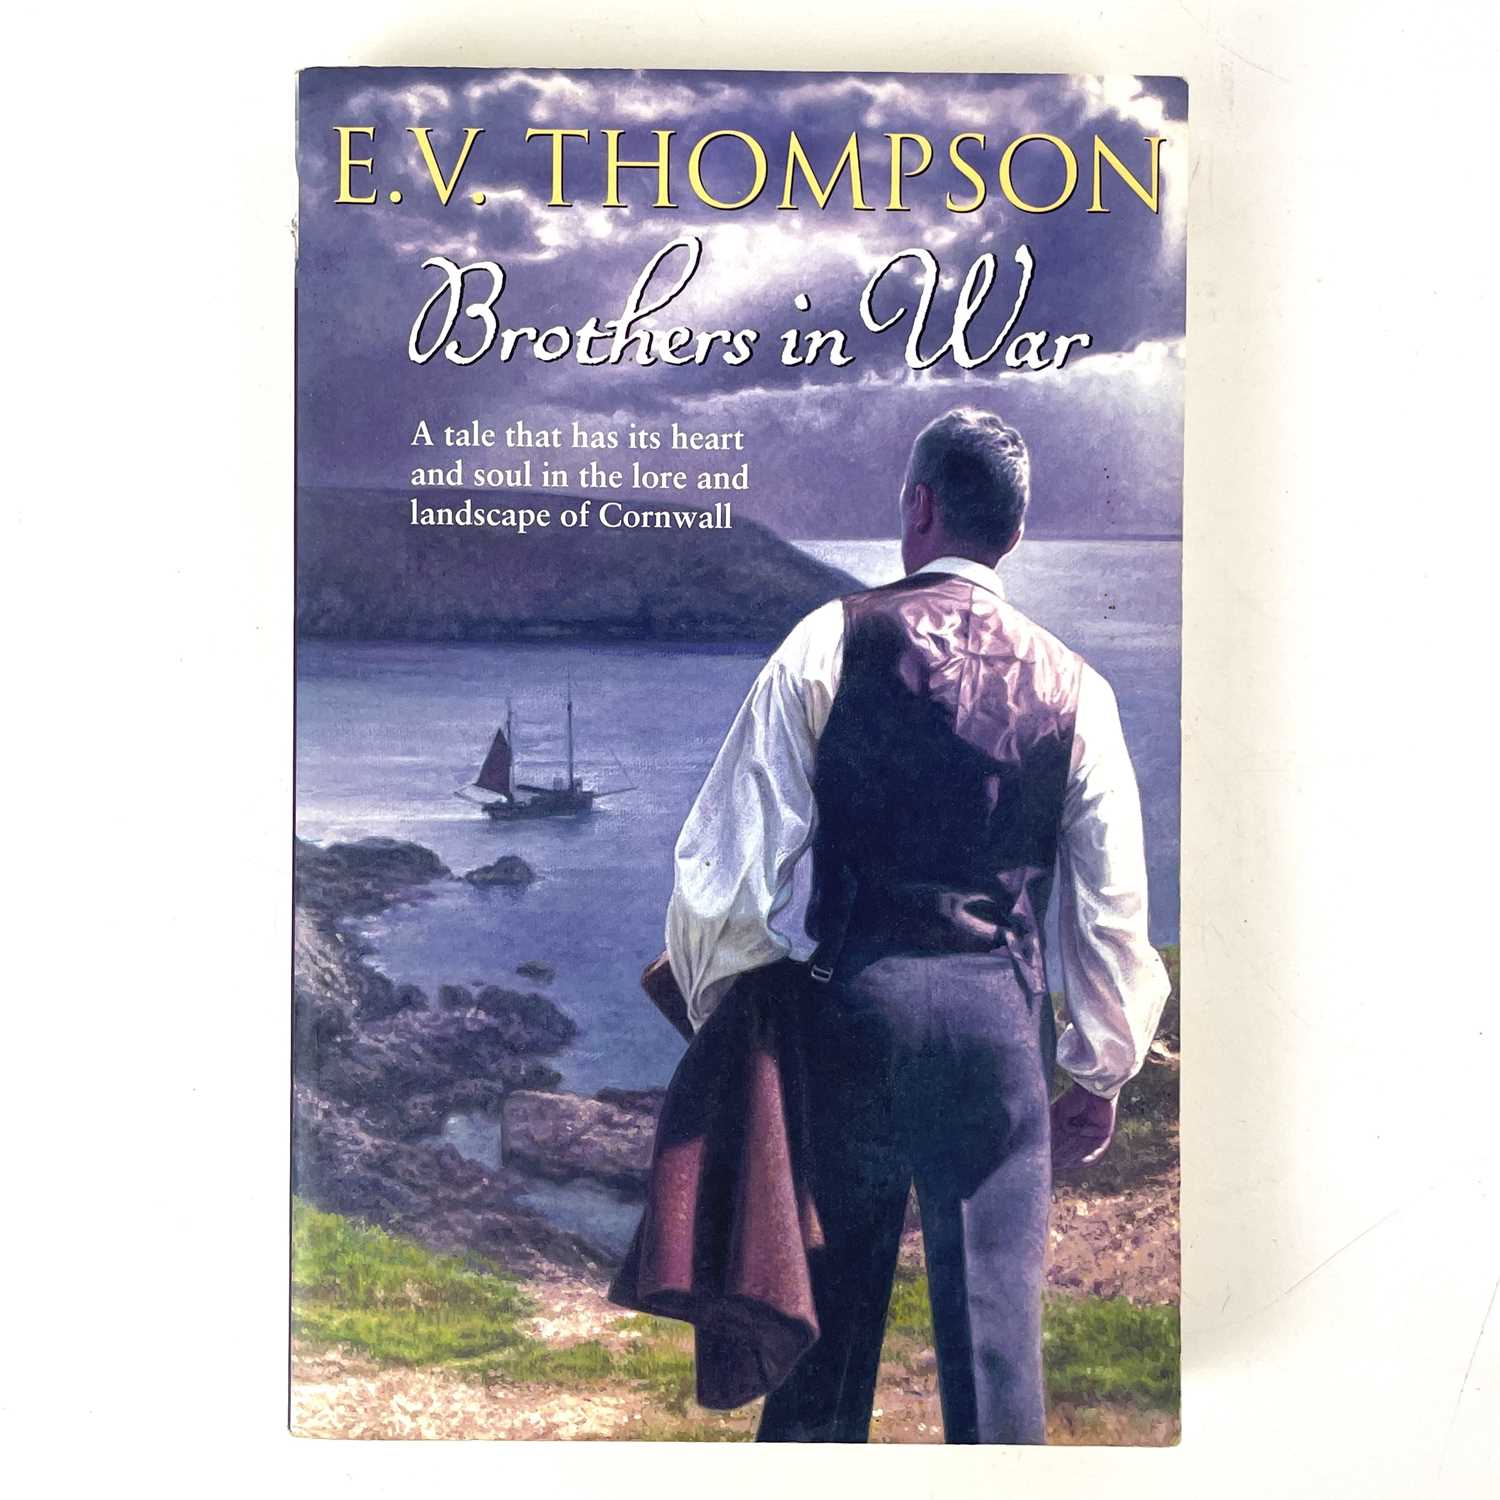 E. V. THOMPSON. Six signed works. - Image 7 of 10